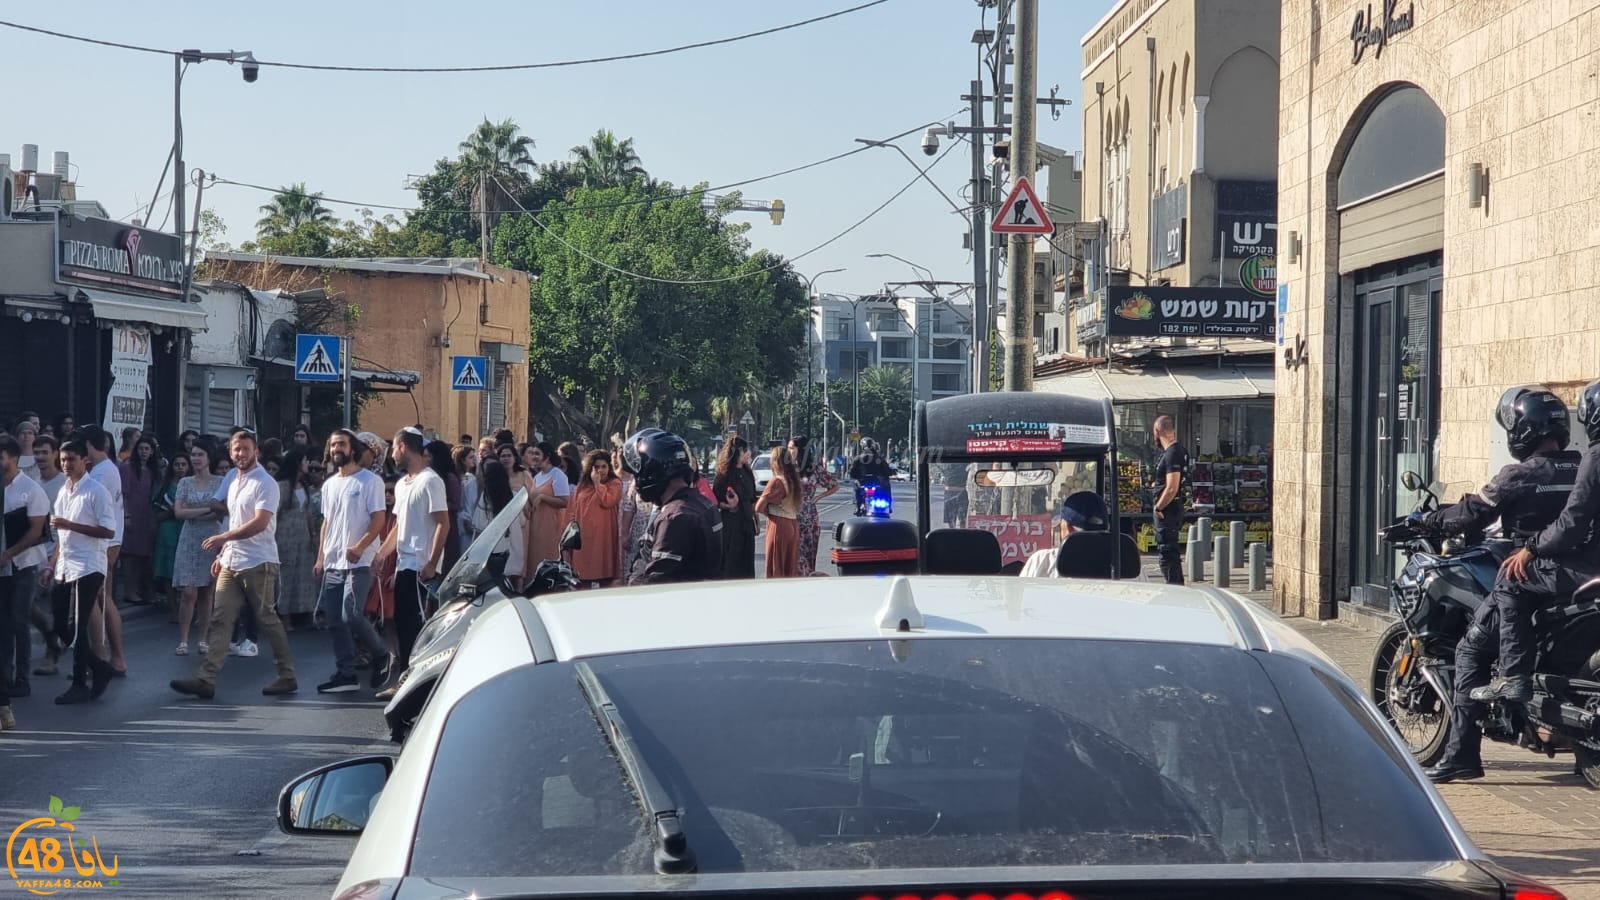 يافا: مسيرة ضخمة للمستوطنين تحت حراسة الشرطة